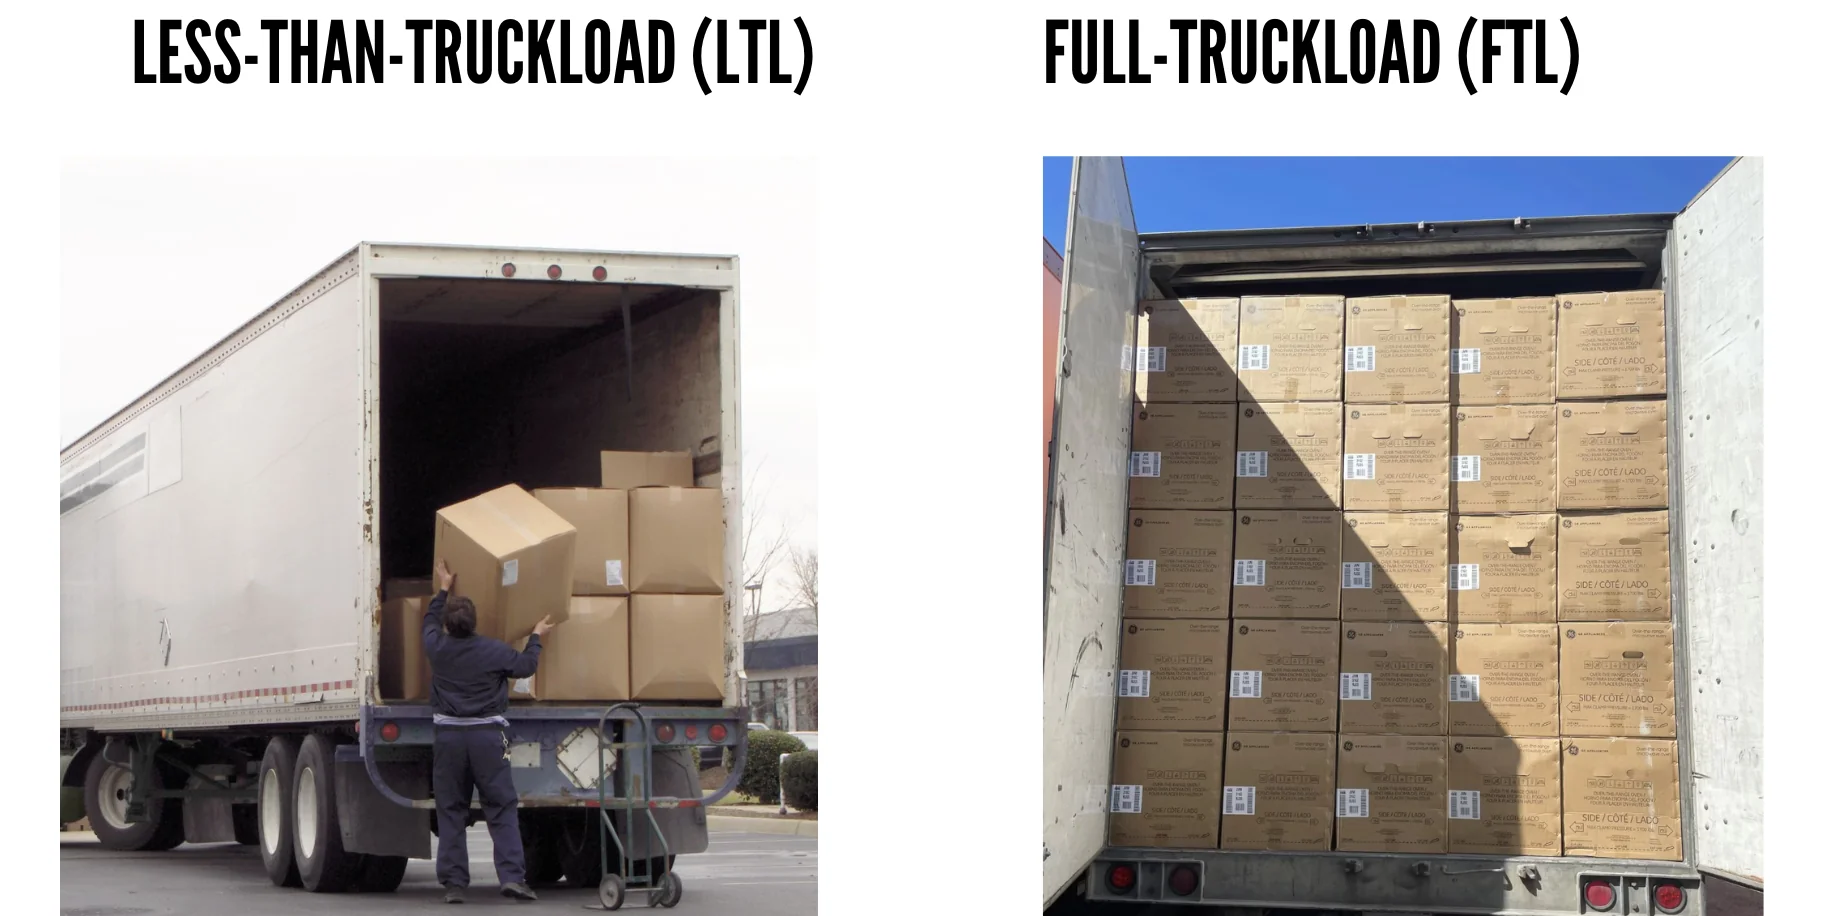 Full Truckload vs Less-Than-Truckload